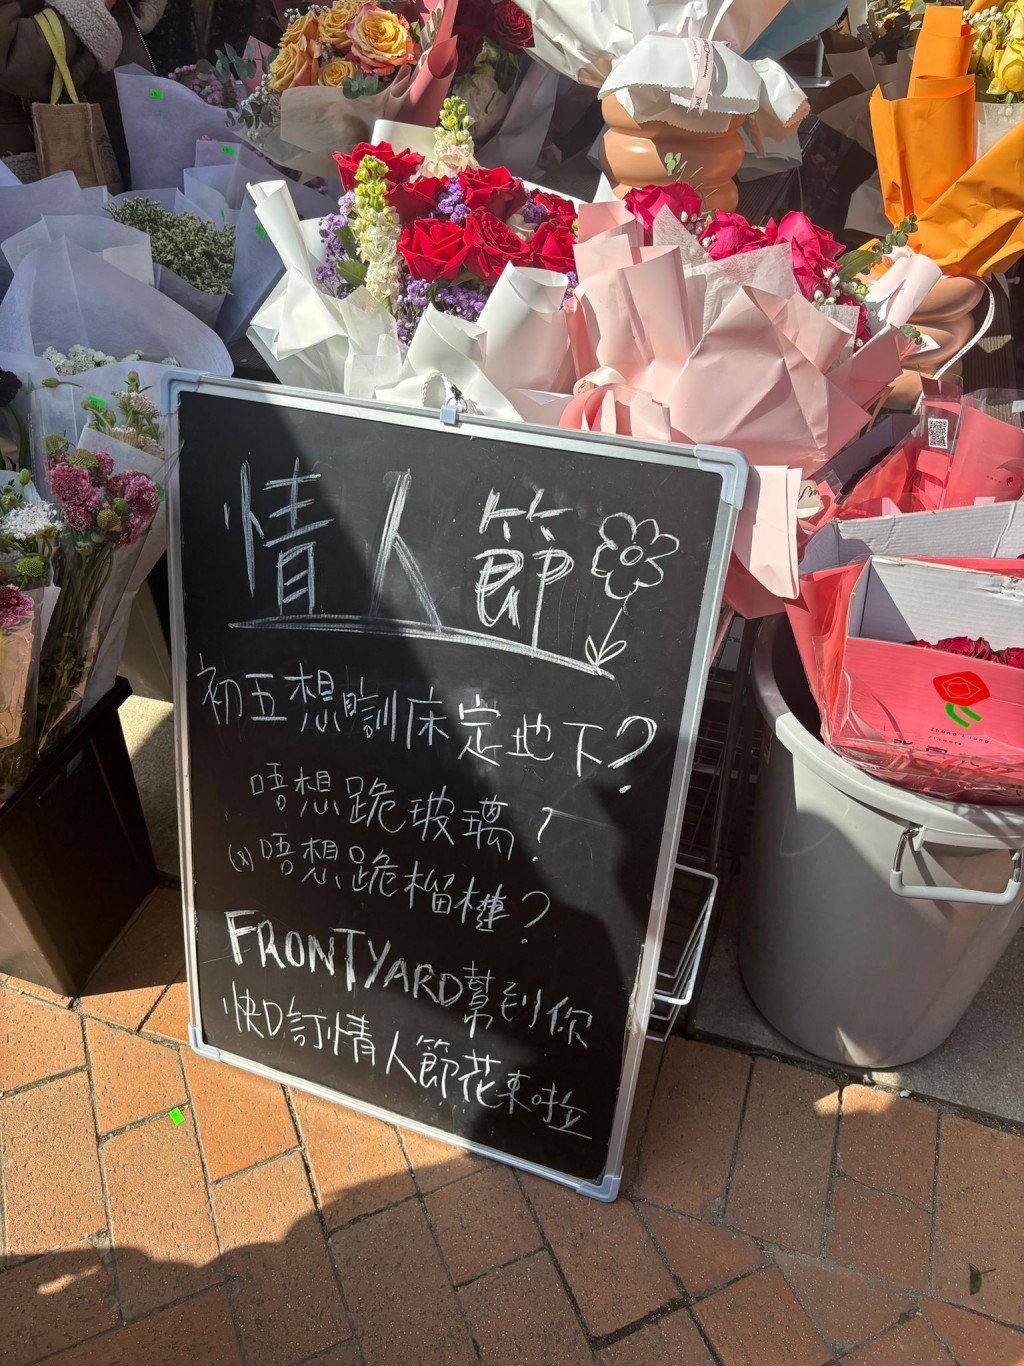 有花店摆放招牌，以出位手法招徕。